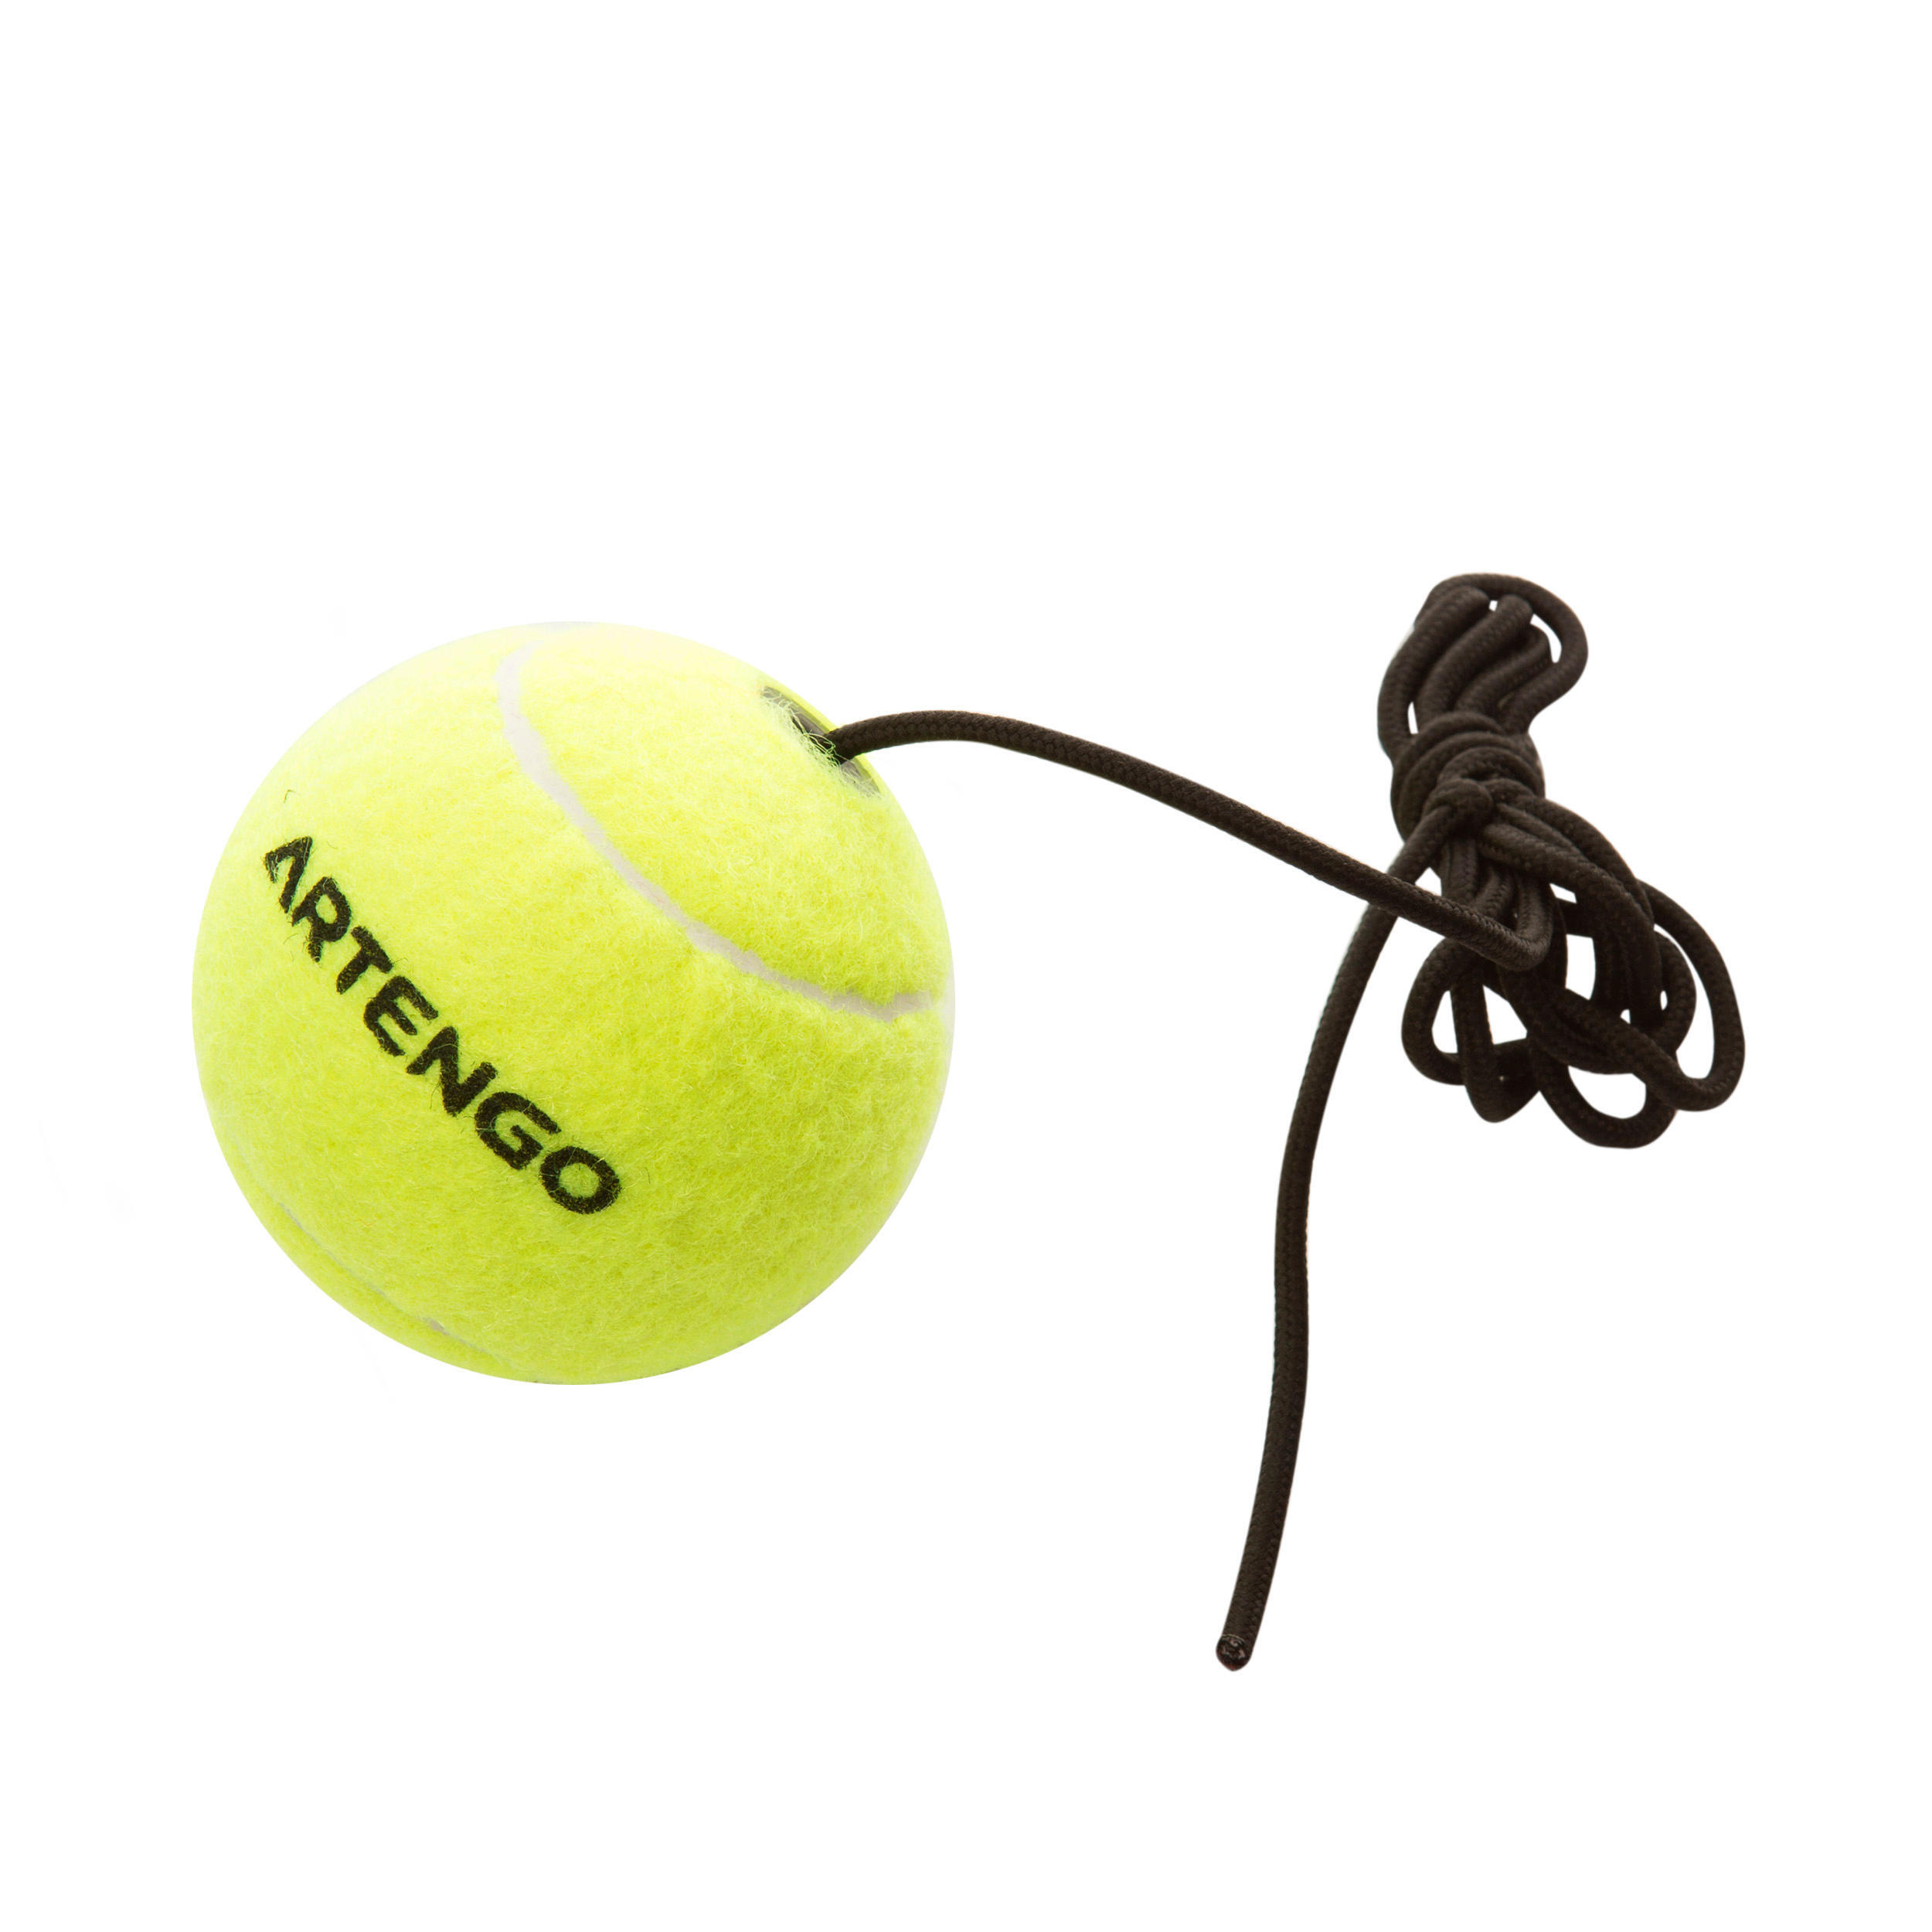 "Turnball Tennis Ball" Speedball Ball 4/4